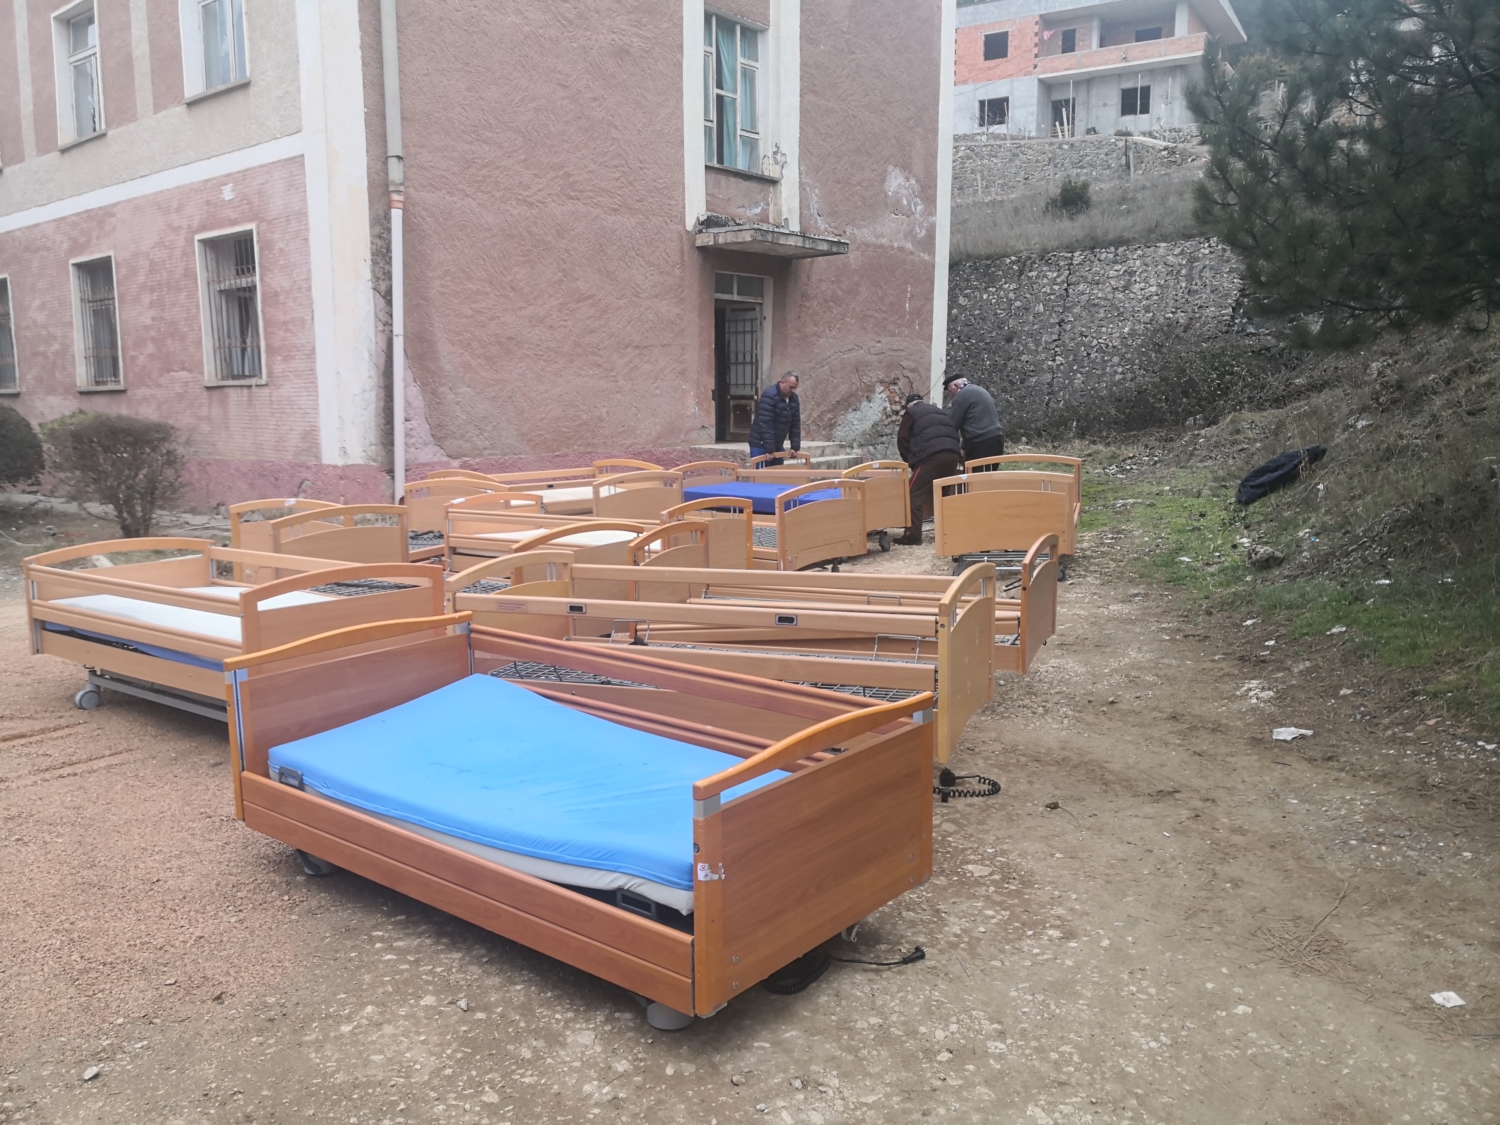 Pflegebetten und Krankenhausbetten für das Krankenhaus im Hintergund in Albanien